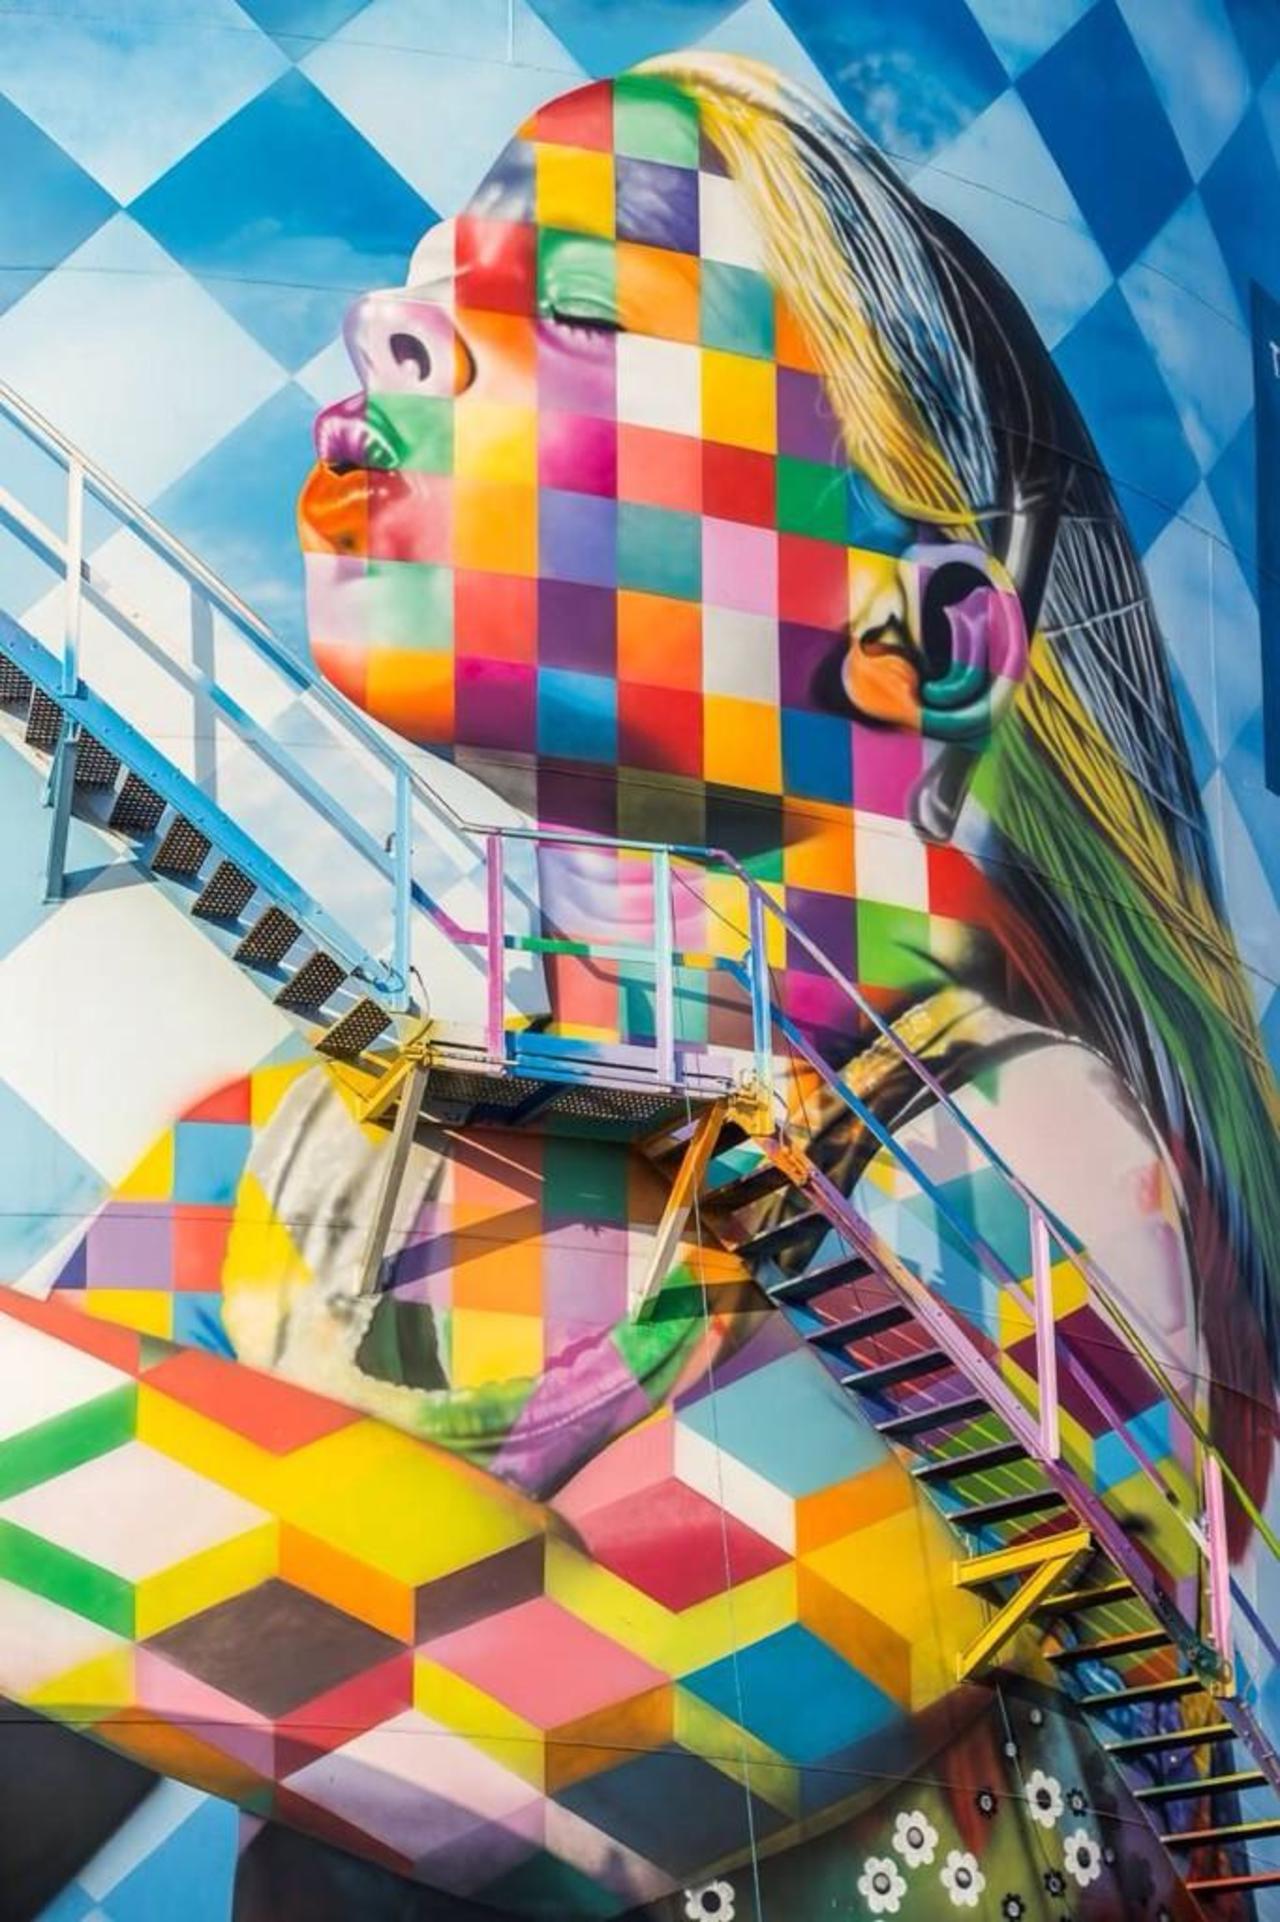 Artist Eduardo Kobra new stunning Street Art project located in Cubatão, Brazil #art #mural #graffiti #streetart http://t.co/Woffzv7mfb